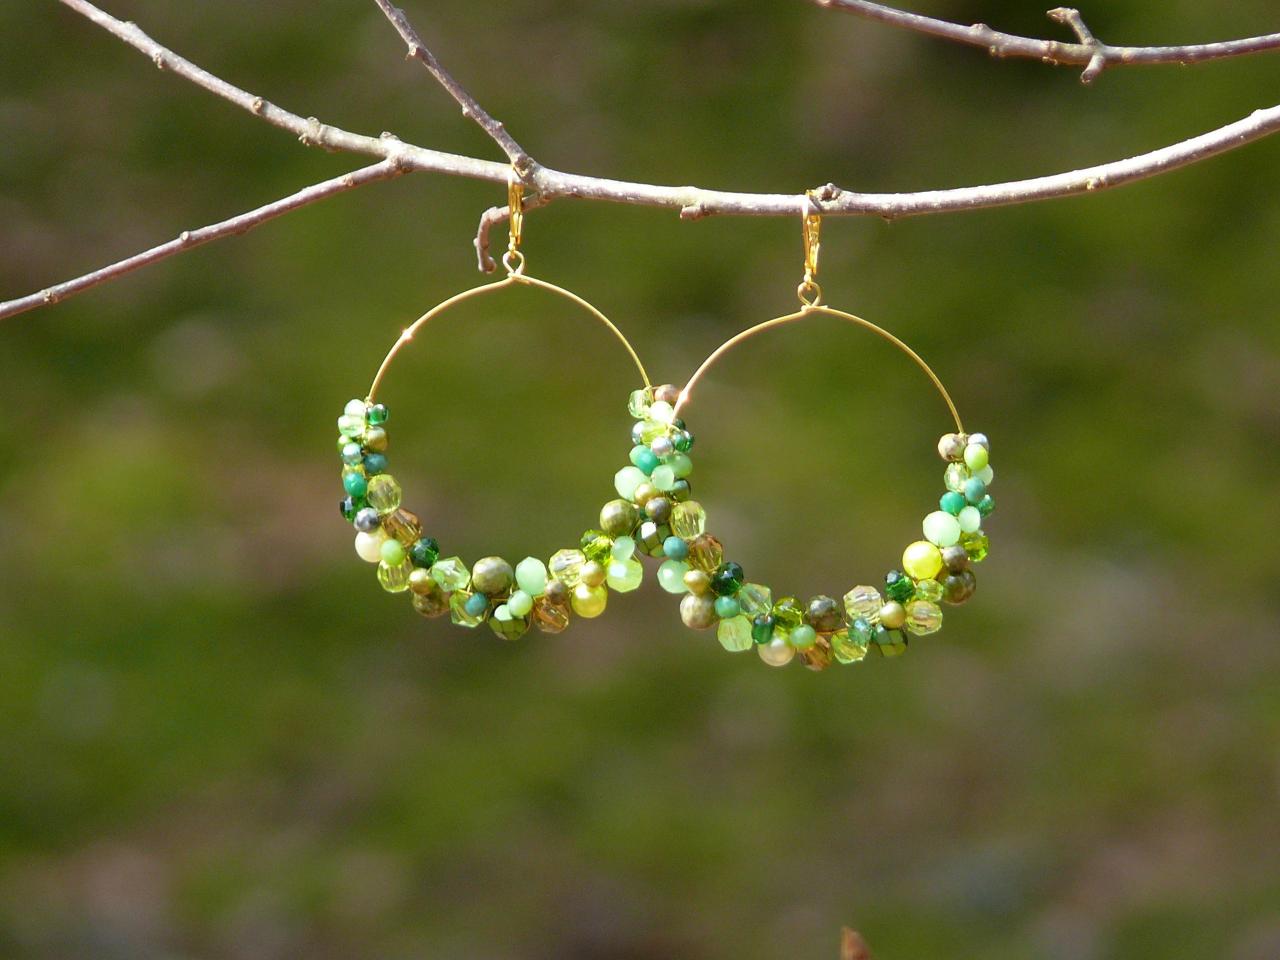 Big Green Hoop Earrings, Green And Gold Hoops, Green Boho Earrings, Wire Wrapped Gold Hoops,green Dangle Earrings, Green Chandelier Earrings